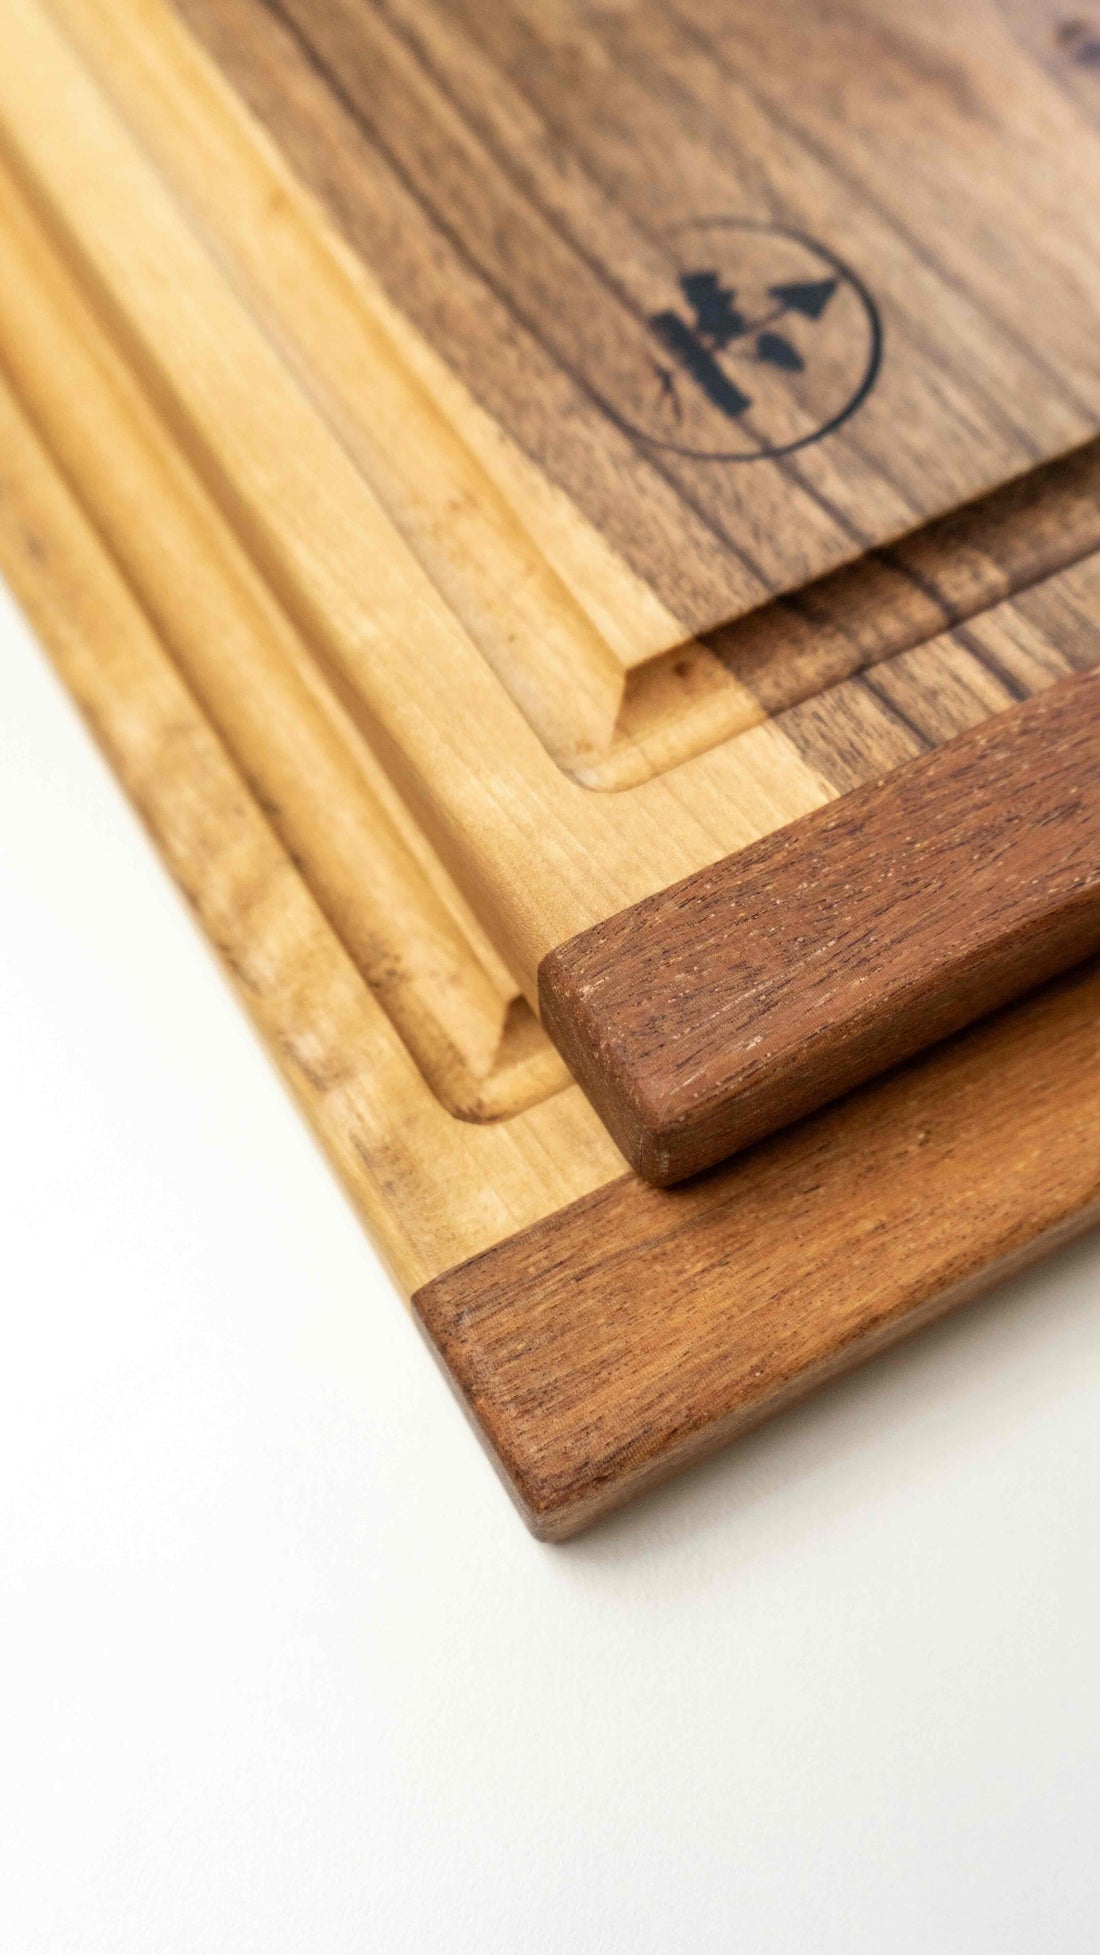 Ročno izdelana deska za rezanje je narejena iz orehovega lesa. Z delovno površino 40 x 24 cm je ta velika rezalna deska ravno prave velikosti, da se prilega vsakemu pultu, najsi je to v domači ali profesionalni kuhinji. Zaradi svoje elegantne površine se lahko uporablja tudi kot servirna deska za postrežbo narezka.